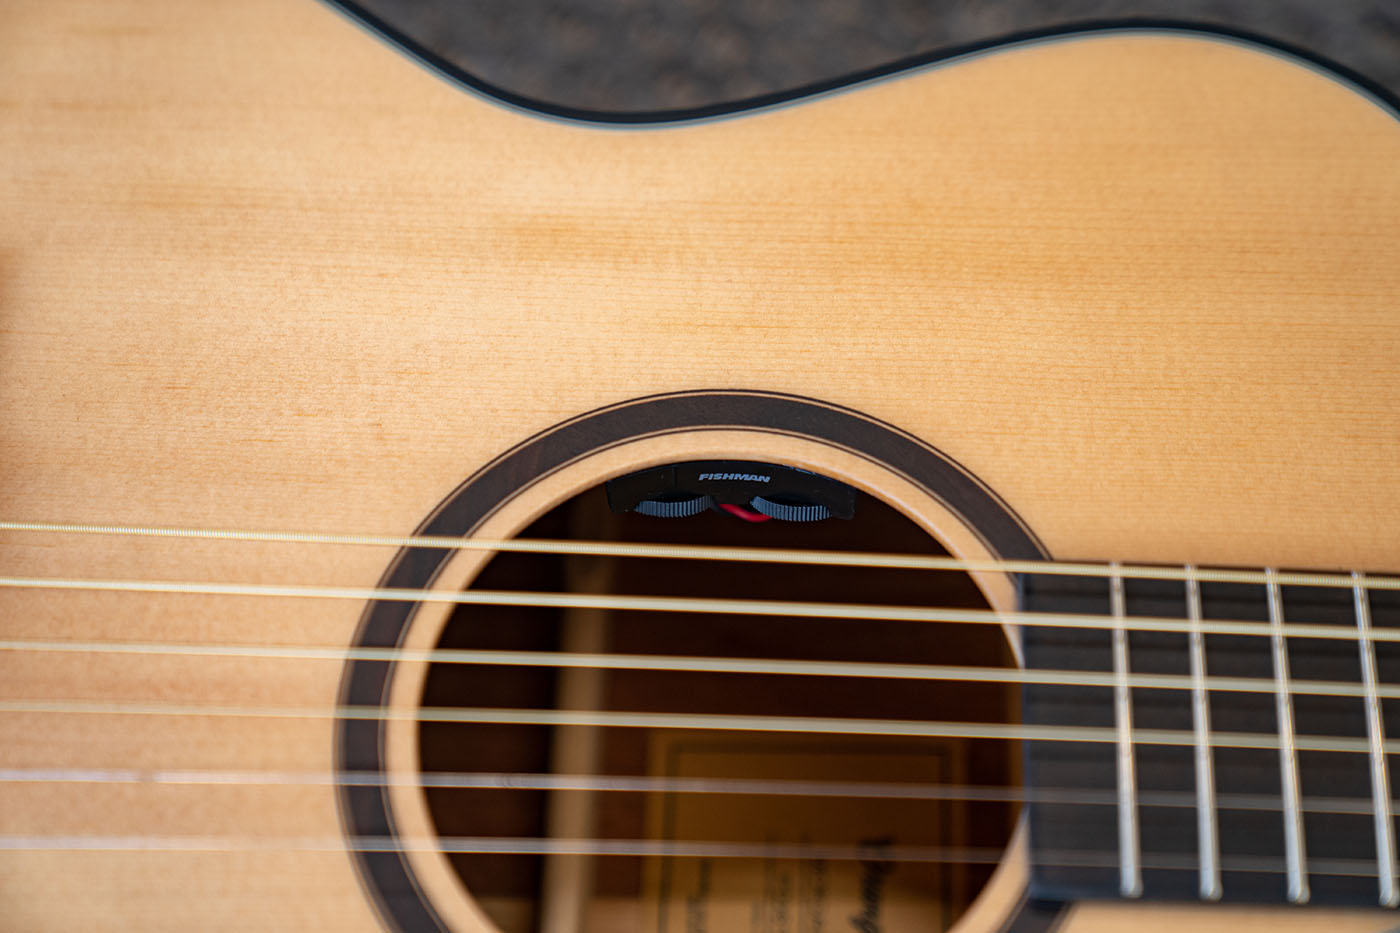 Closeup of the fishman sonitone EQ in a guitar soundhole